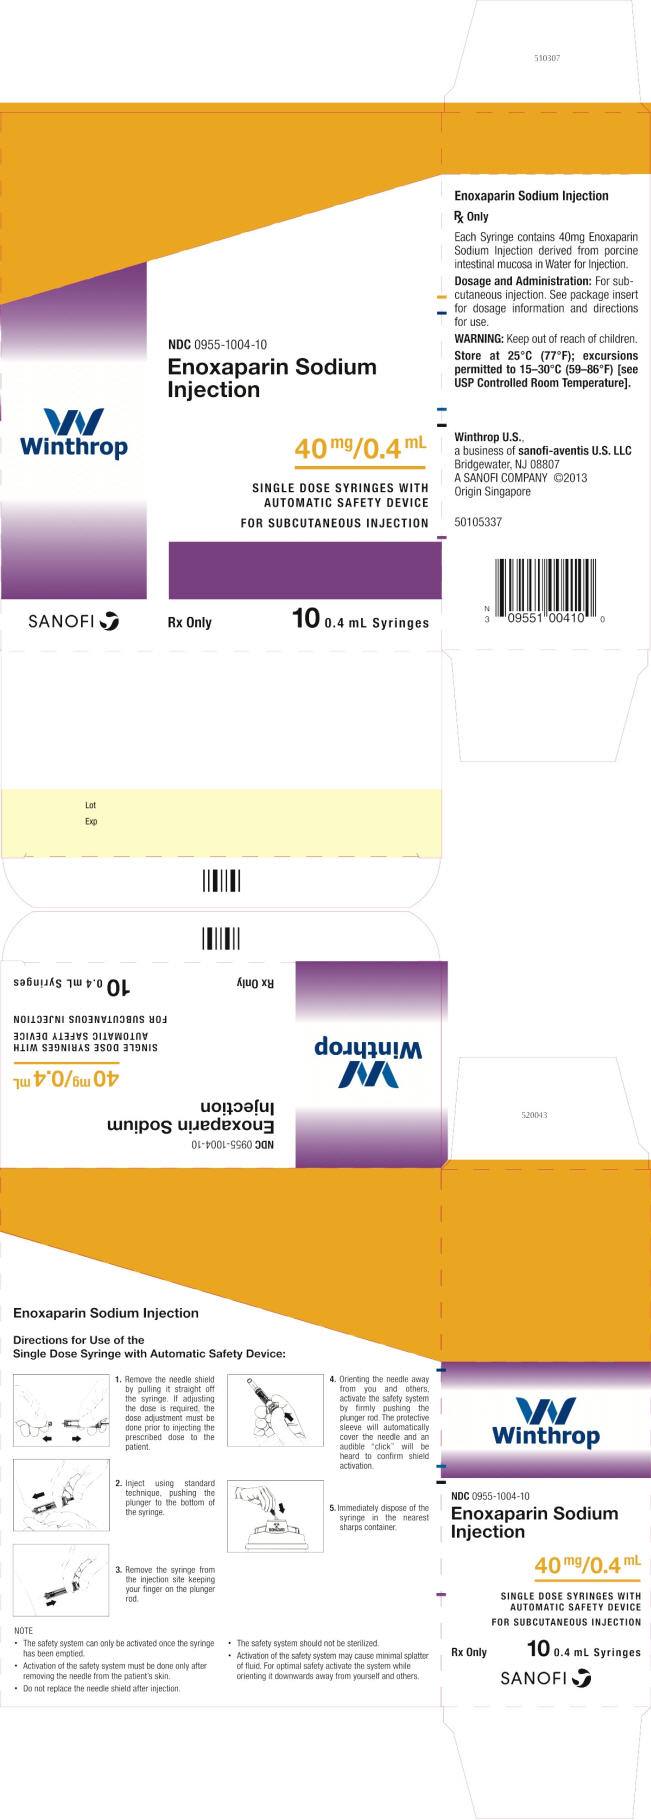 PRINCIPAL DISPLAY PANEL - 40 mg/0.4 mL Syringe Carton